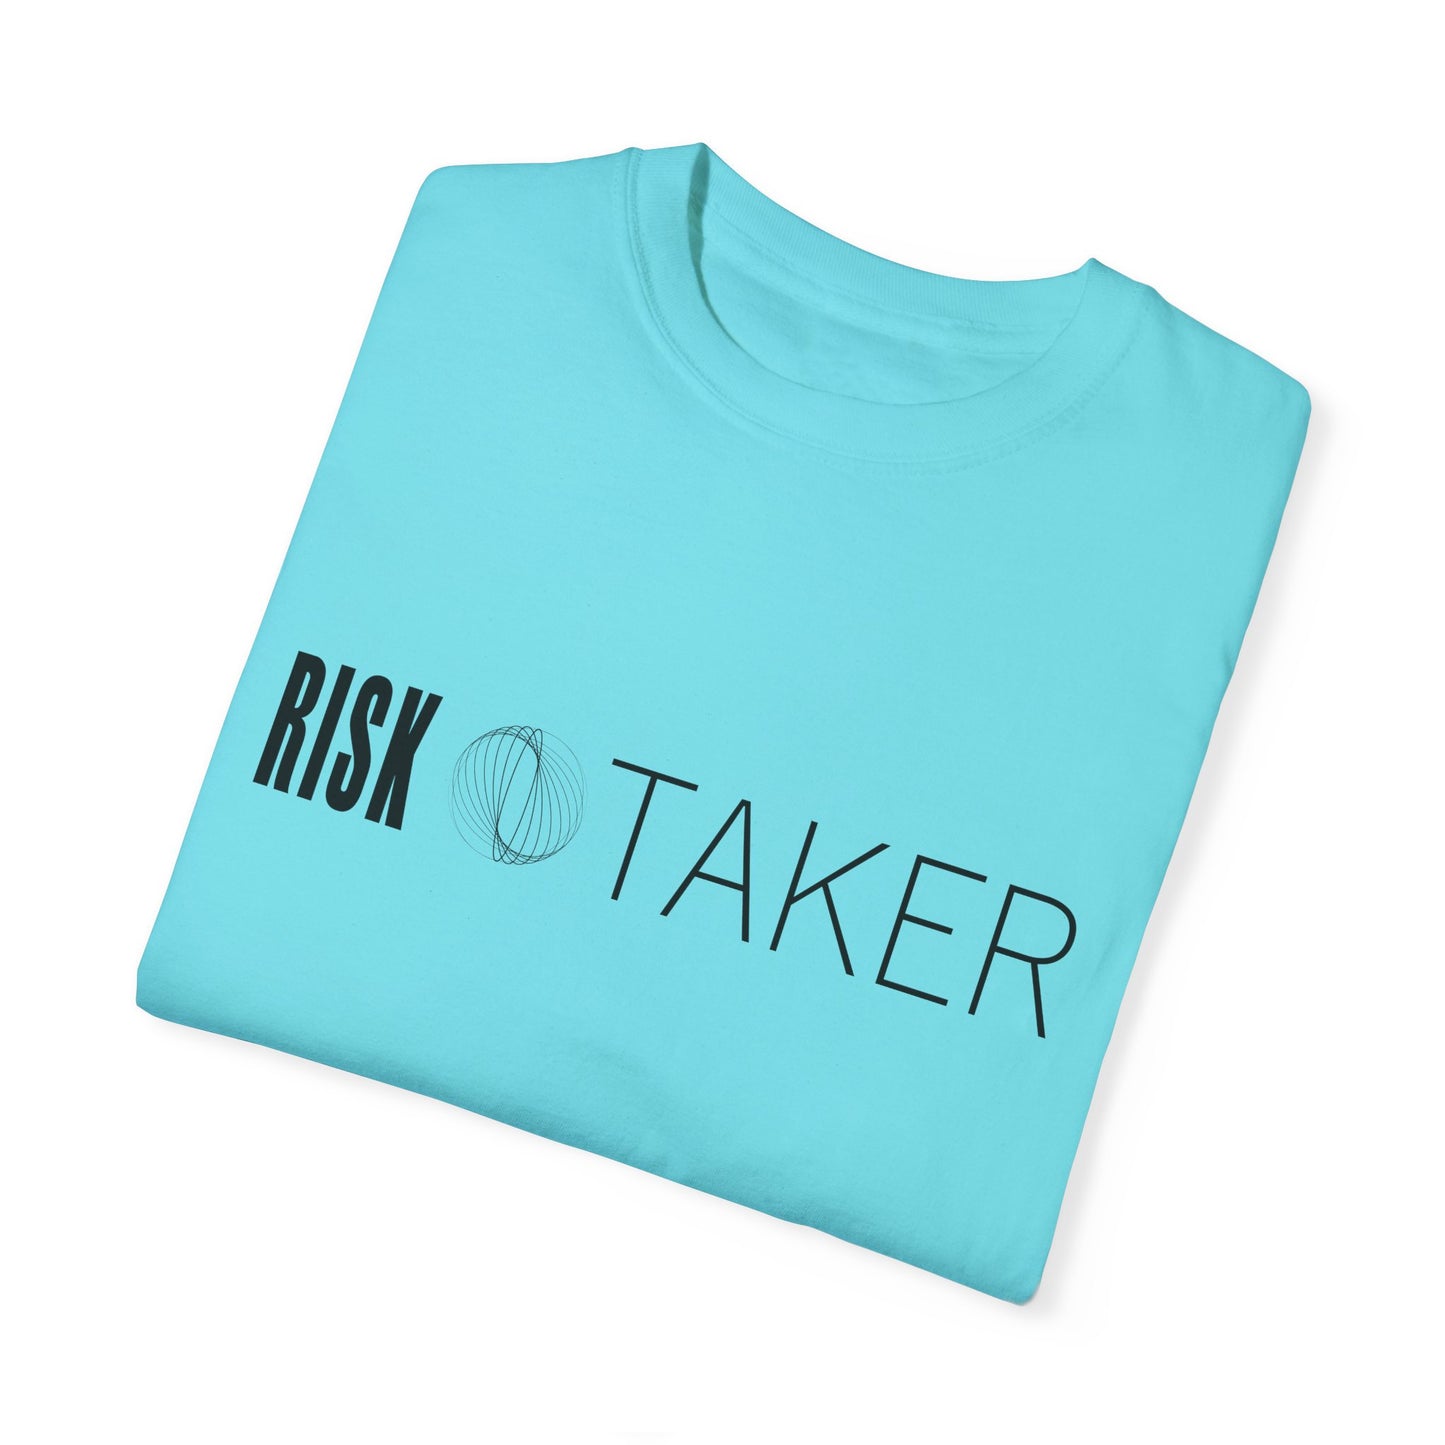 RISK TAKER Unisex Garment-Dyed T-shirt